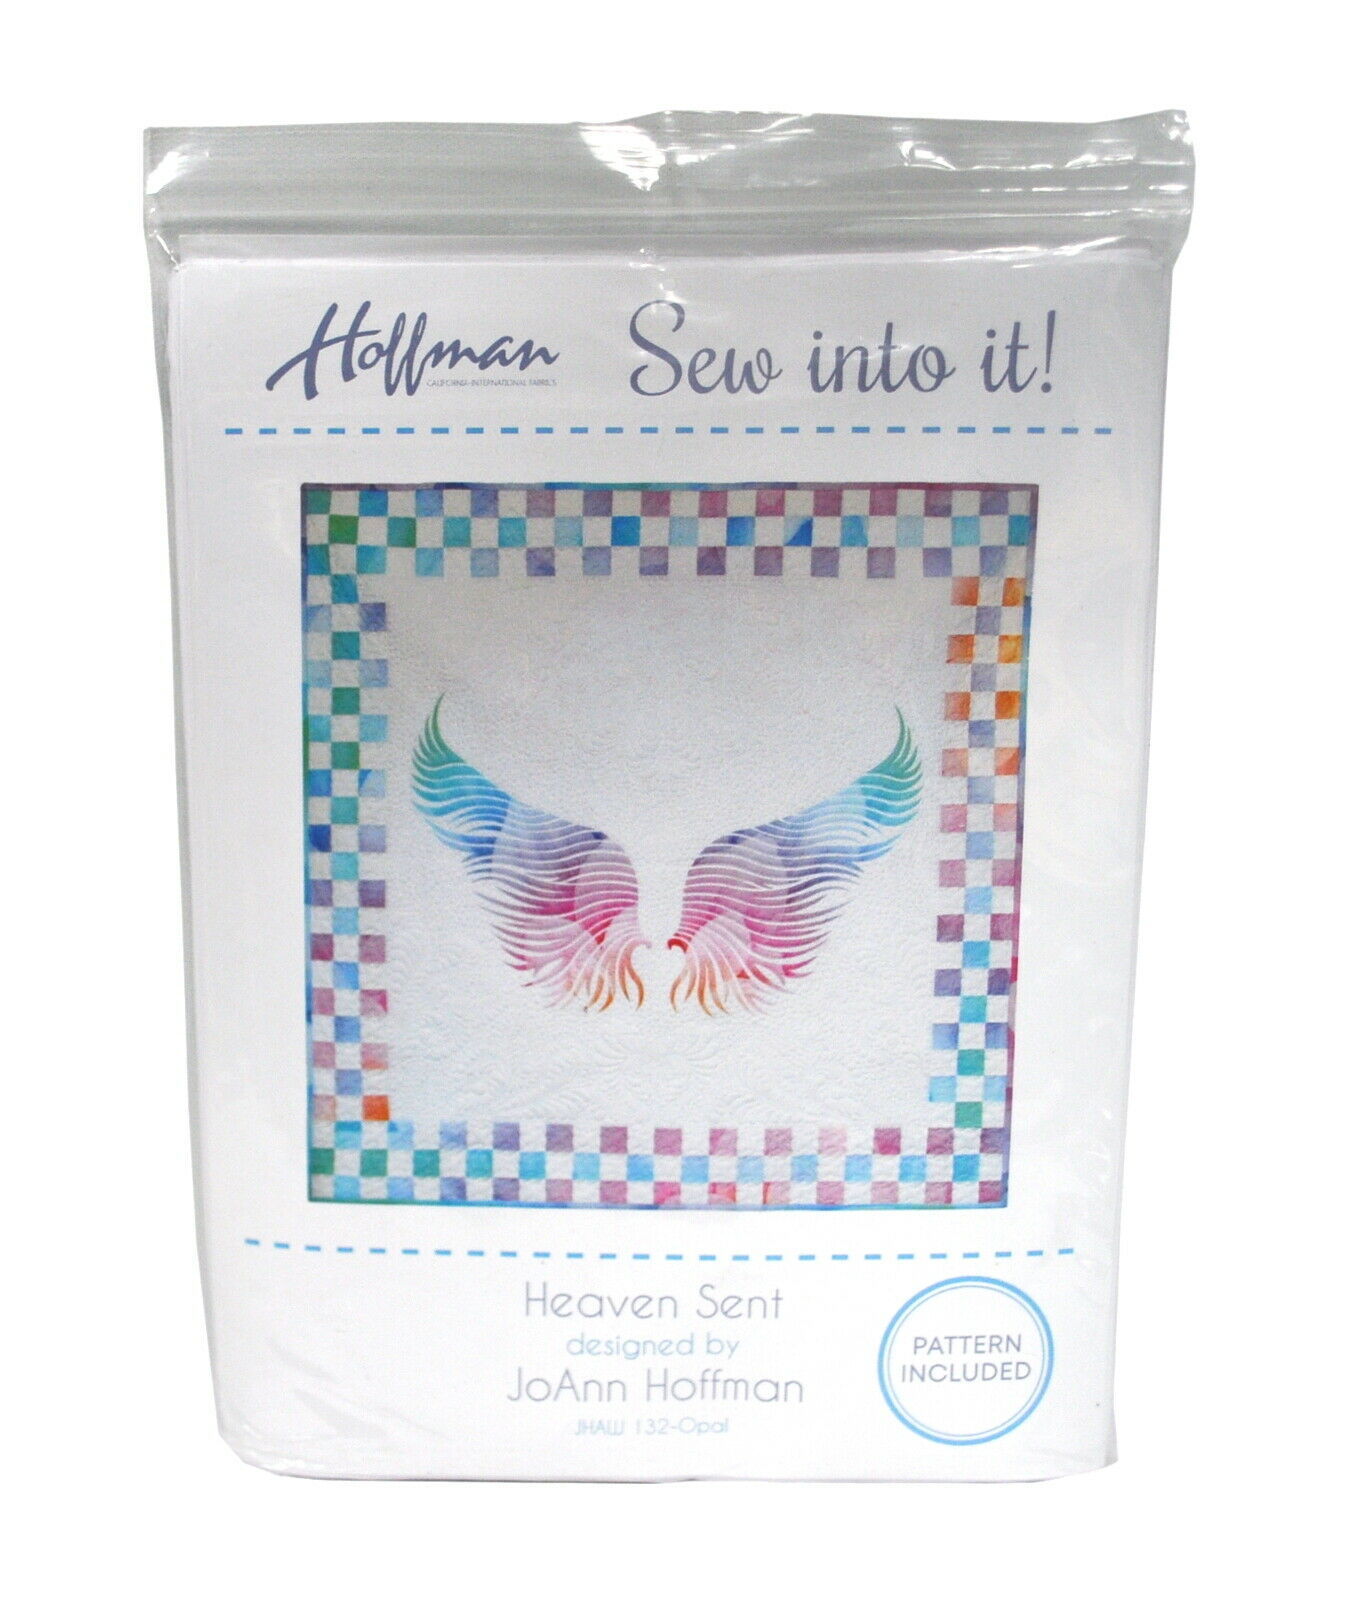 Hoffman Fabrics Heaven Sent Quilt Kit 50.5in x 50.5in - $186.26